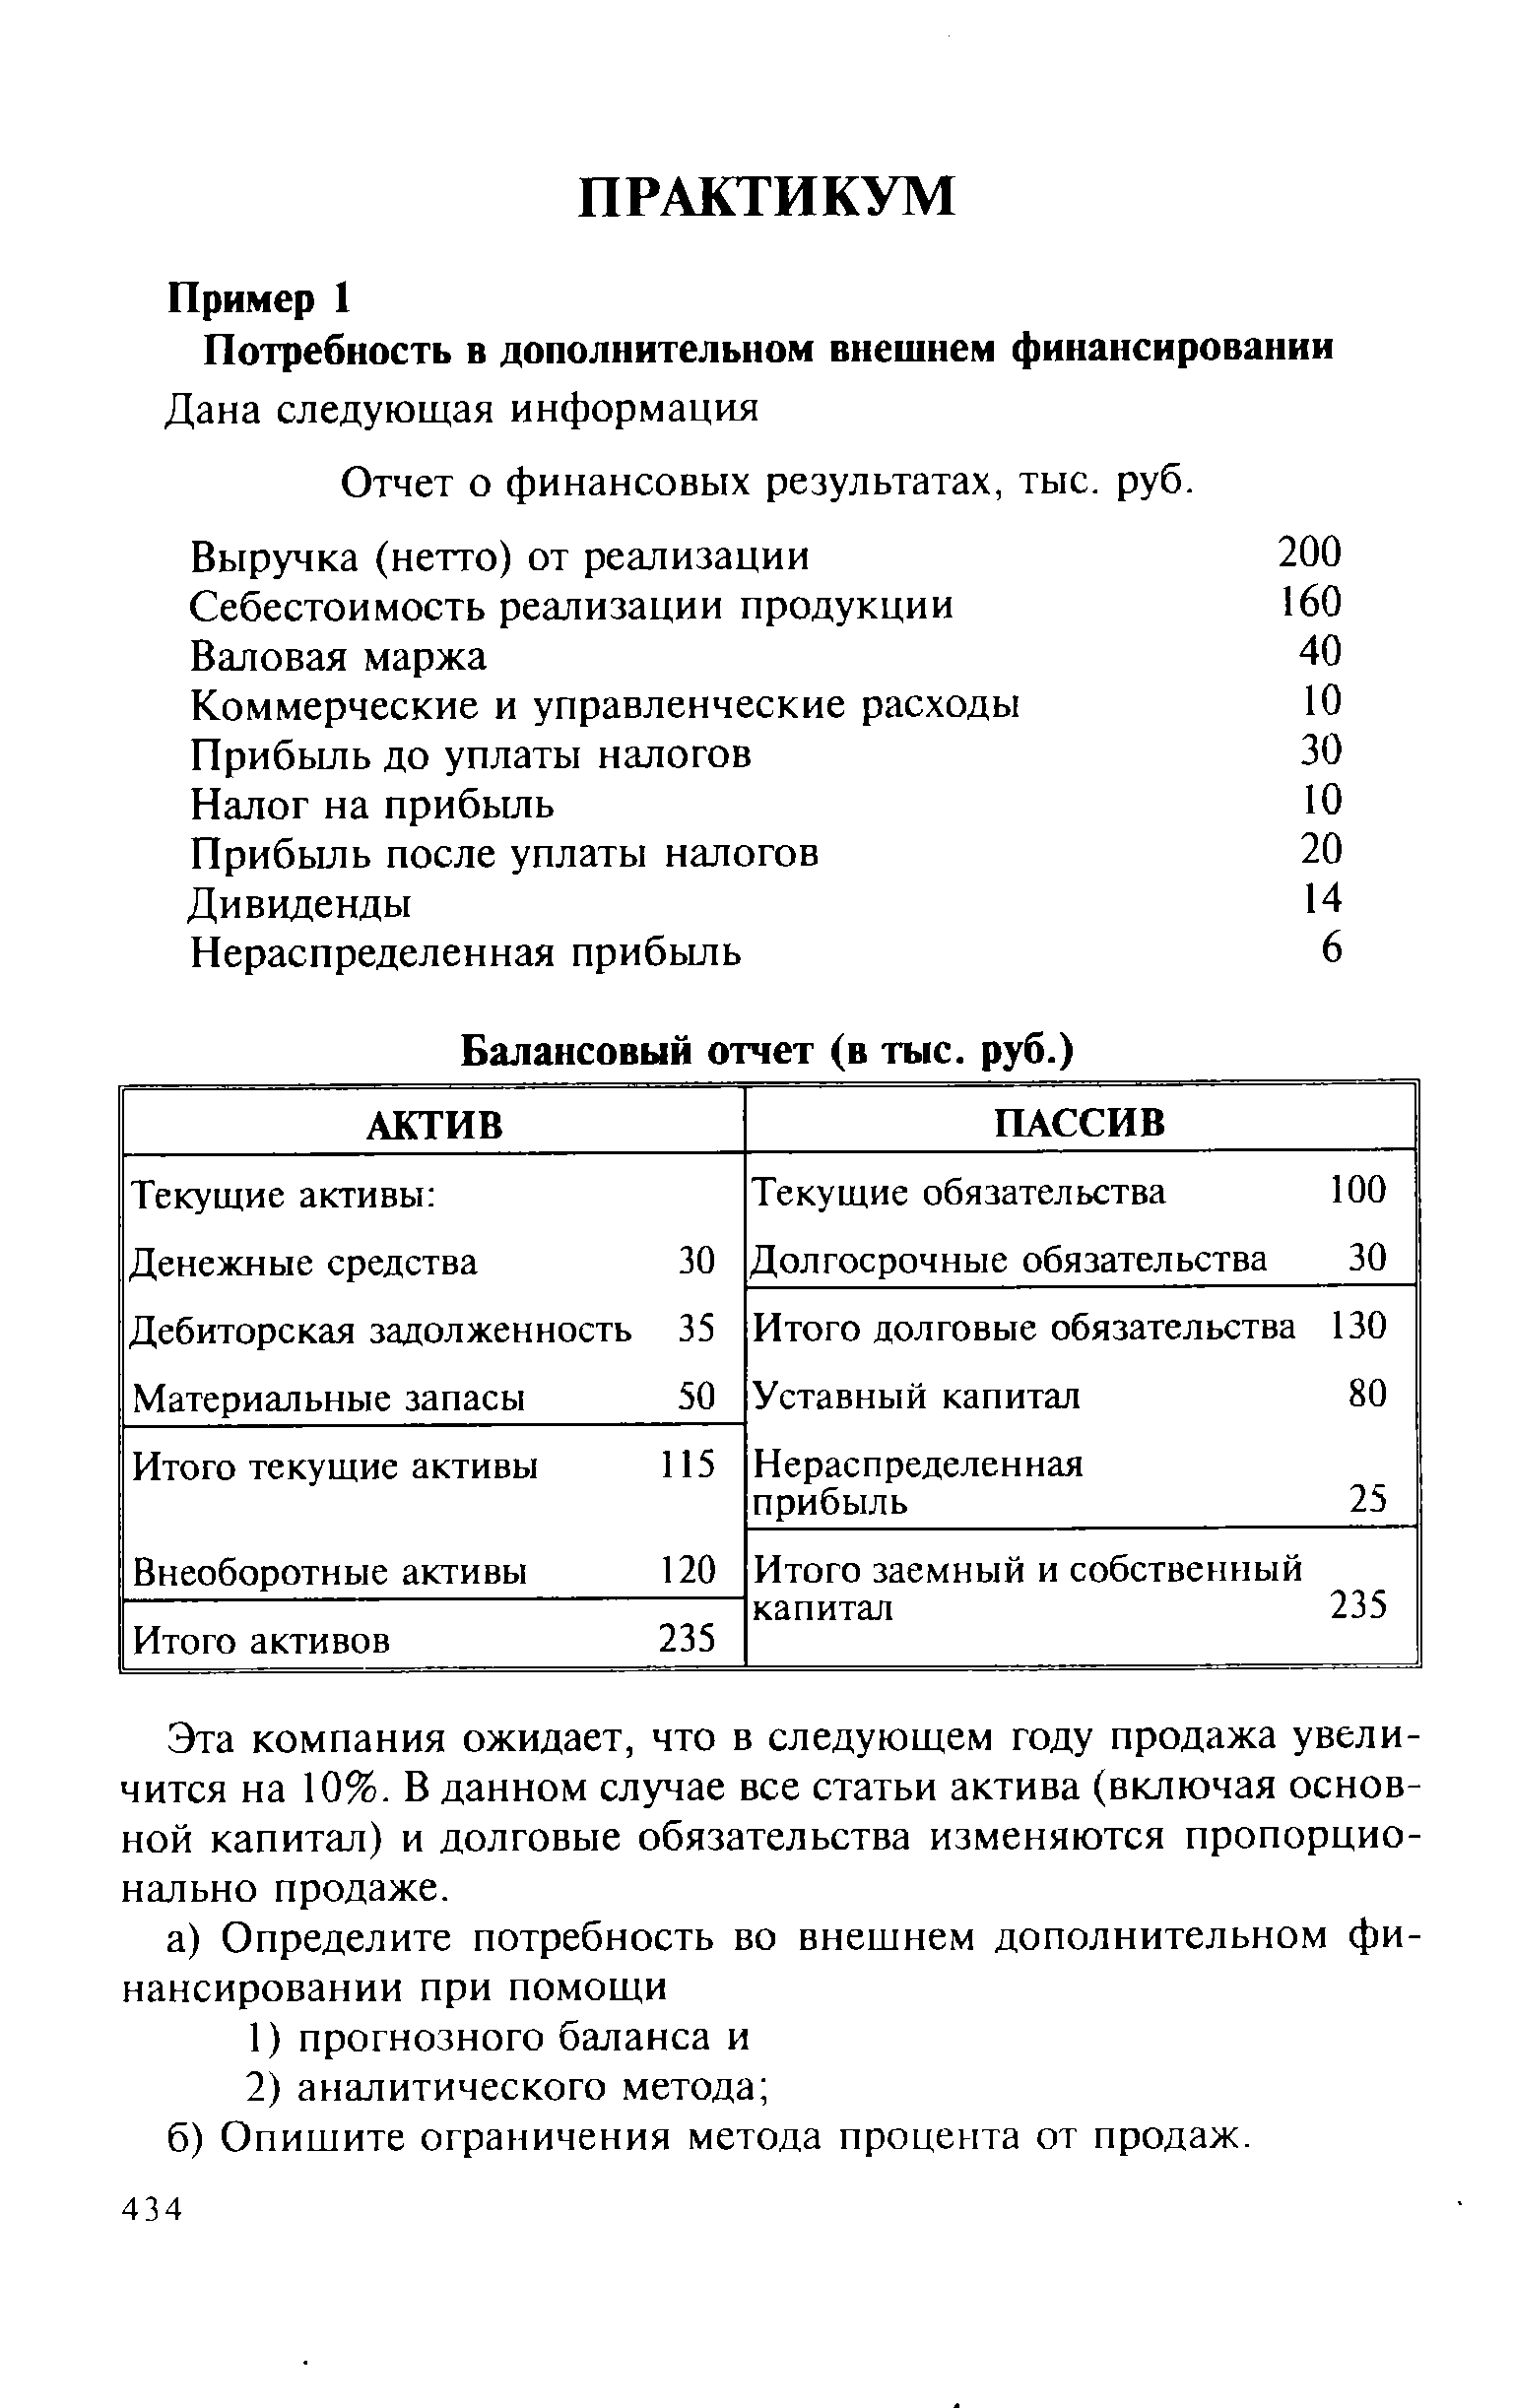 Отчет о финансовых результатах, тыс. руб.
